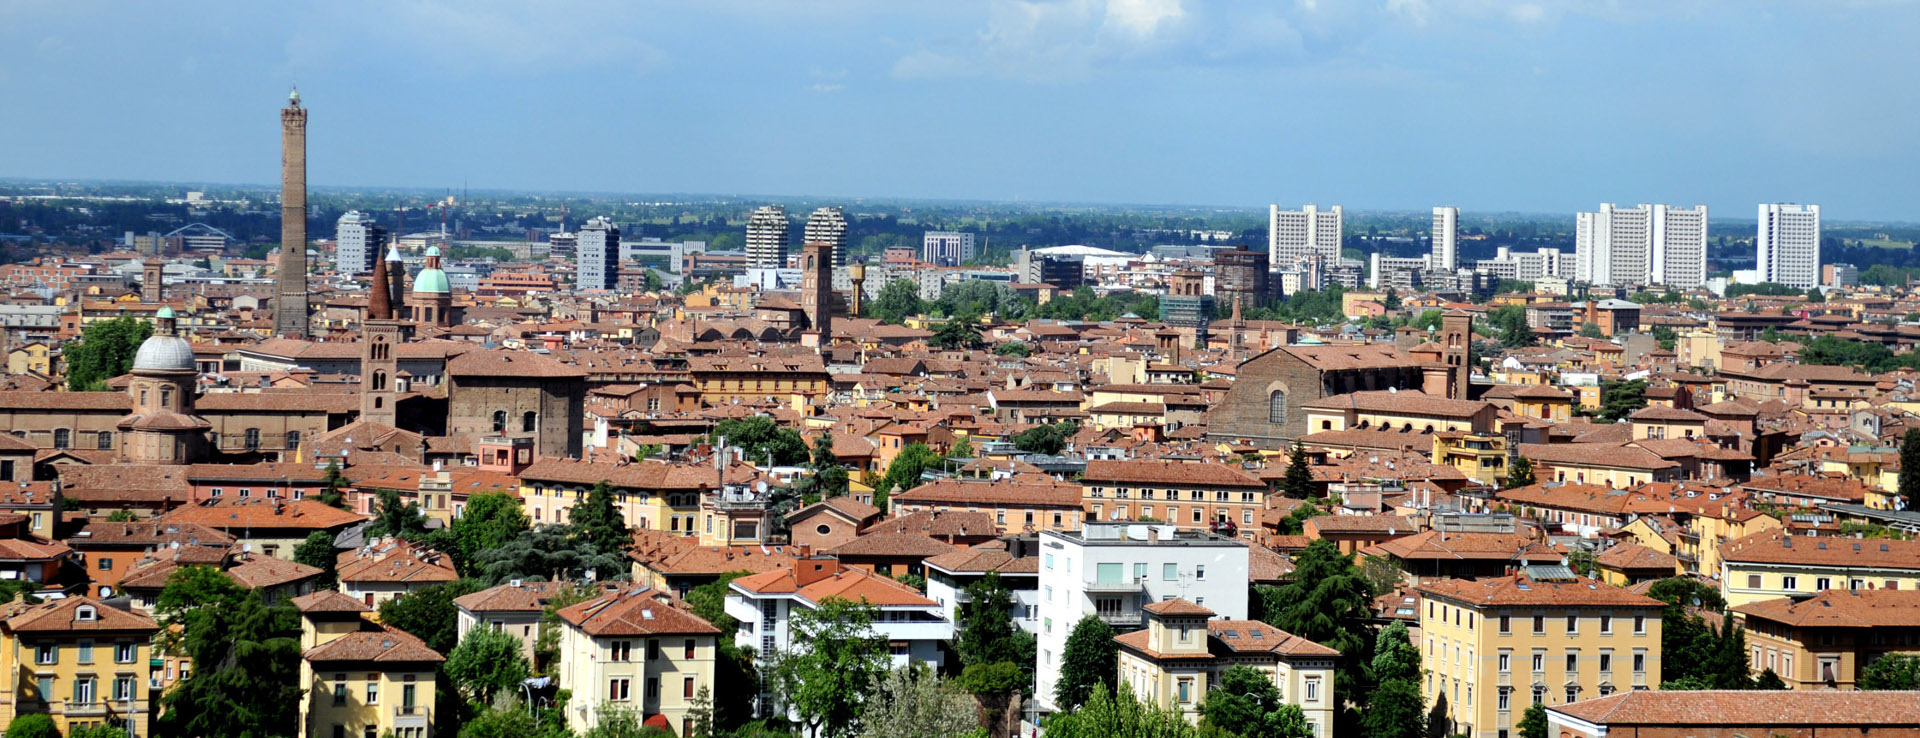 Foto: panoramica su Bologna - Archivio Città metropolitana di Bologna